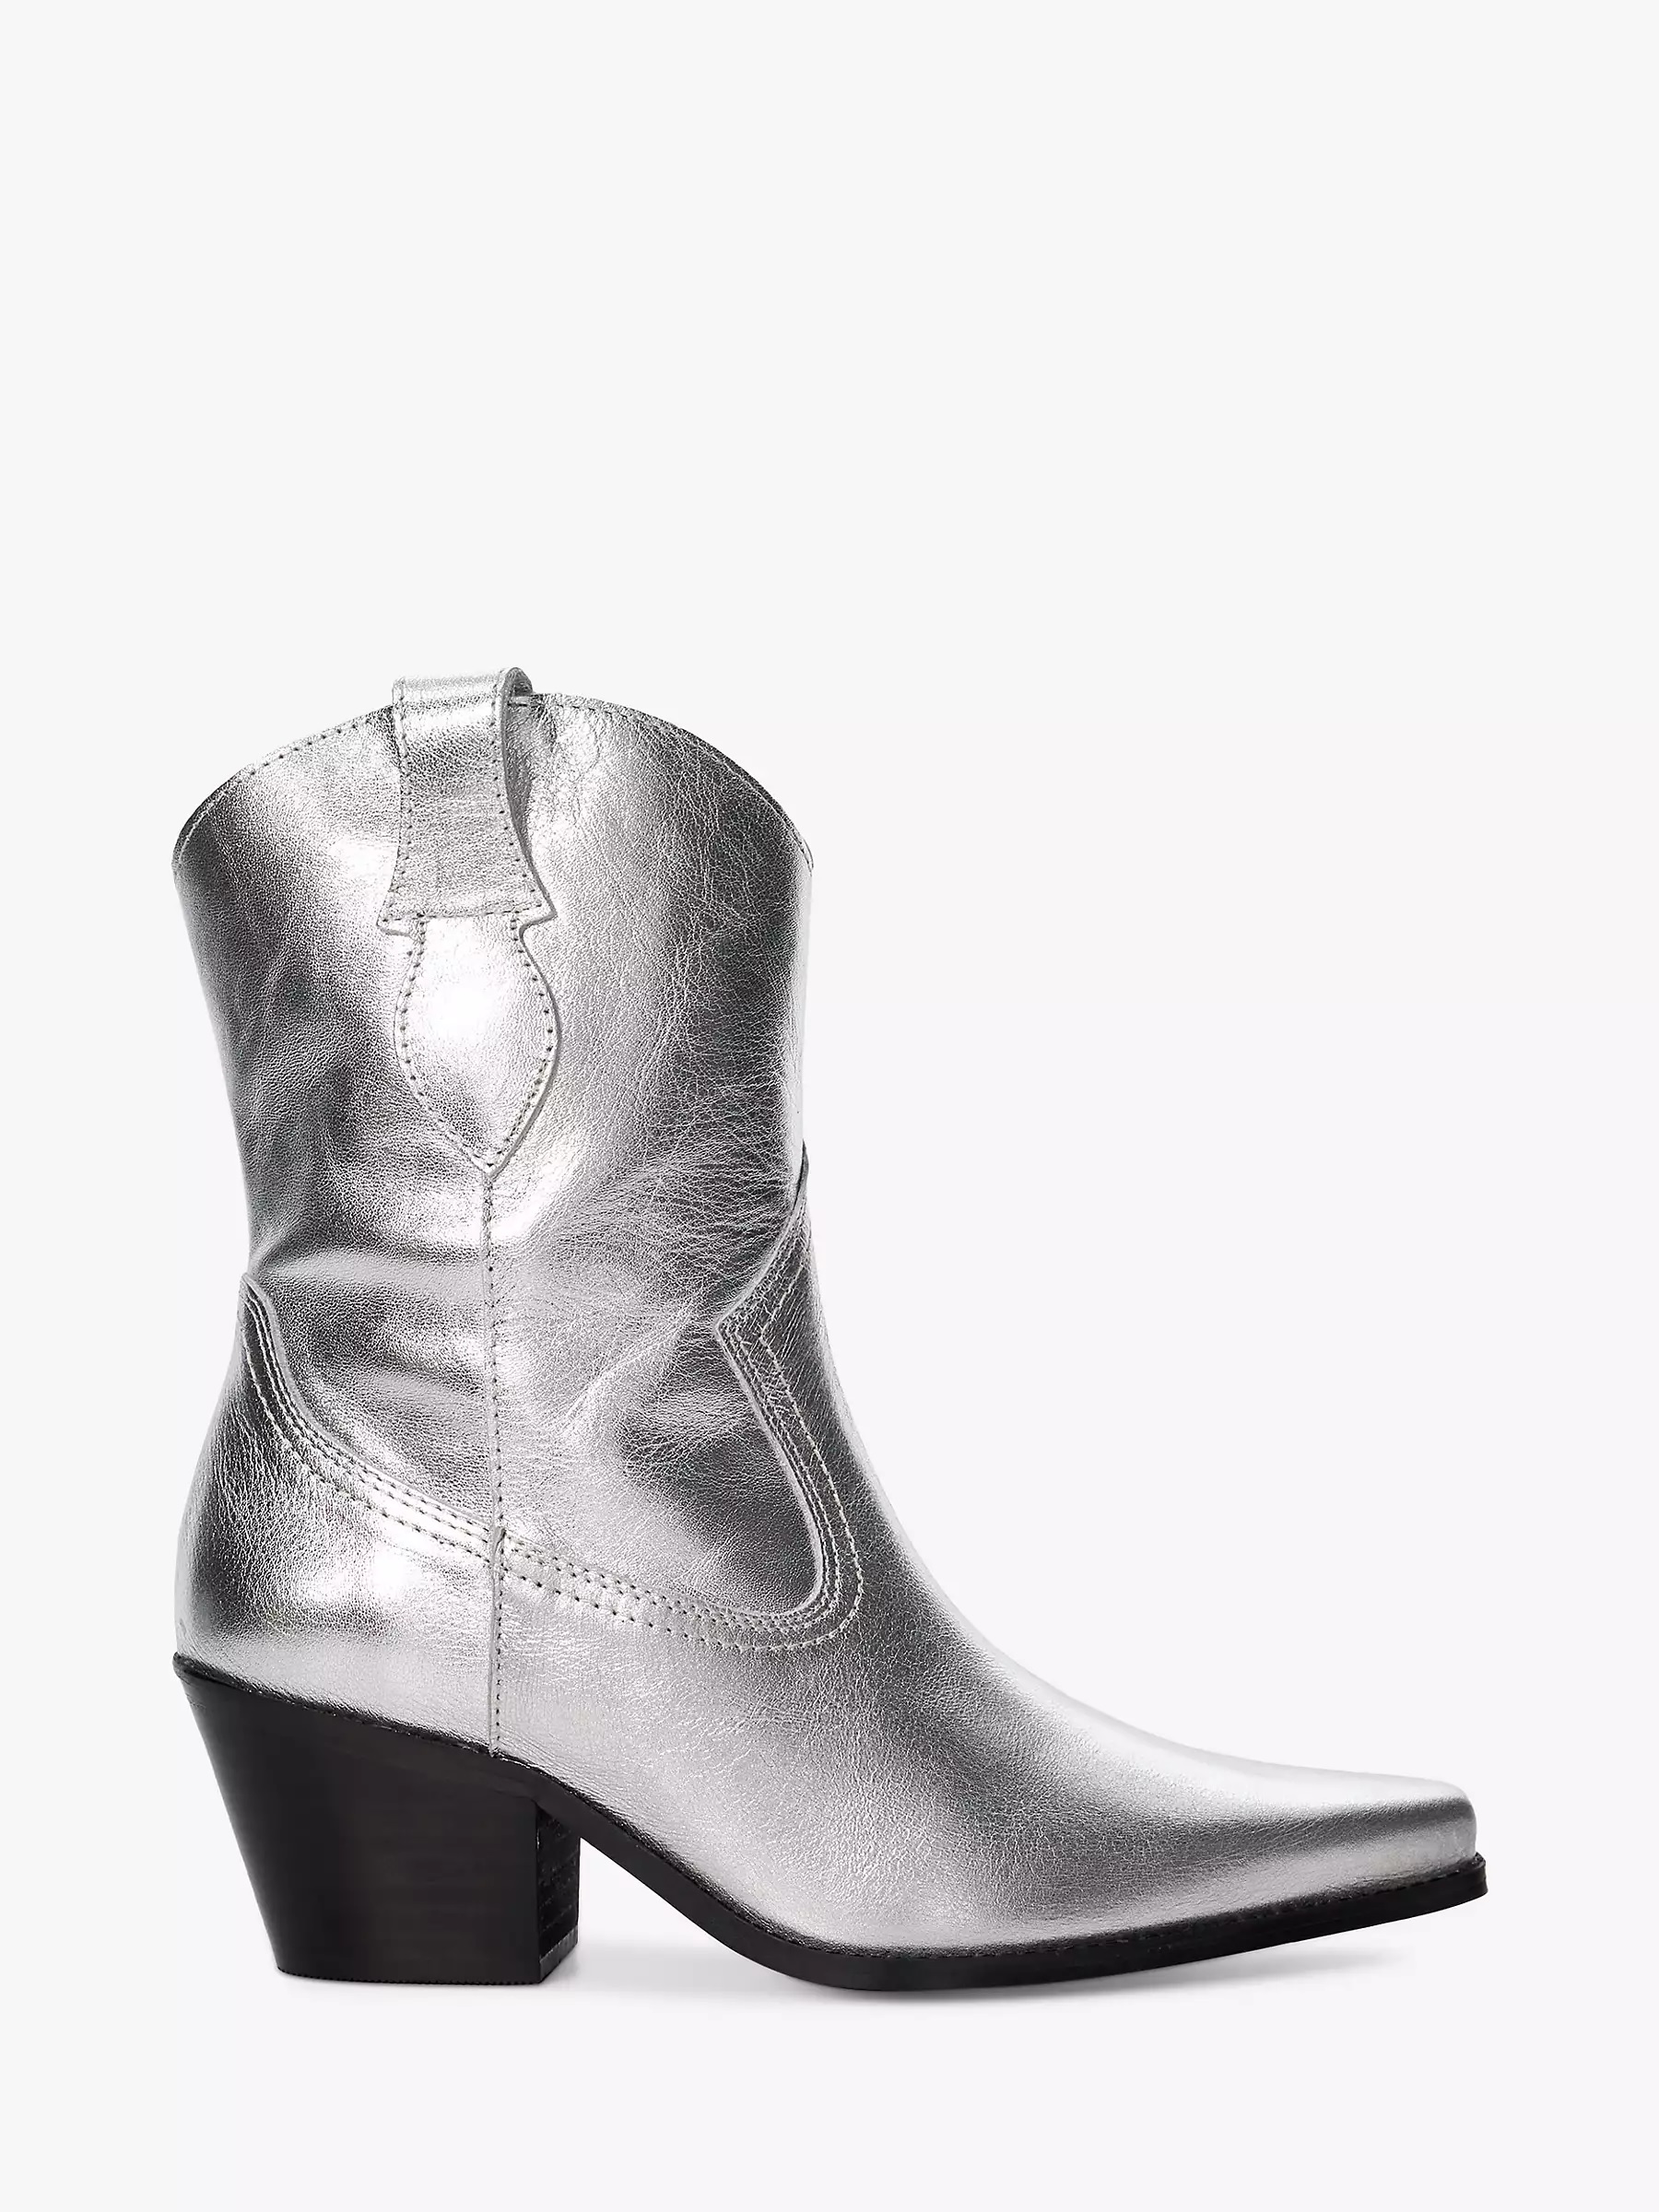 Silberne Stiefel, £160 von Dune über johnlewis.com